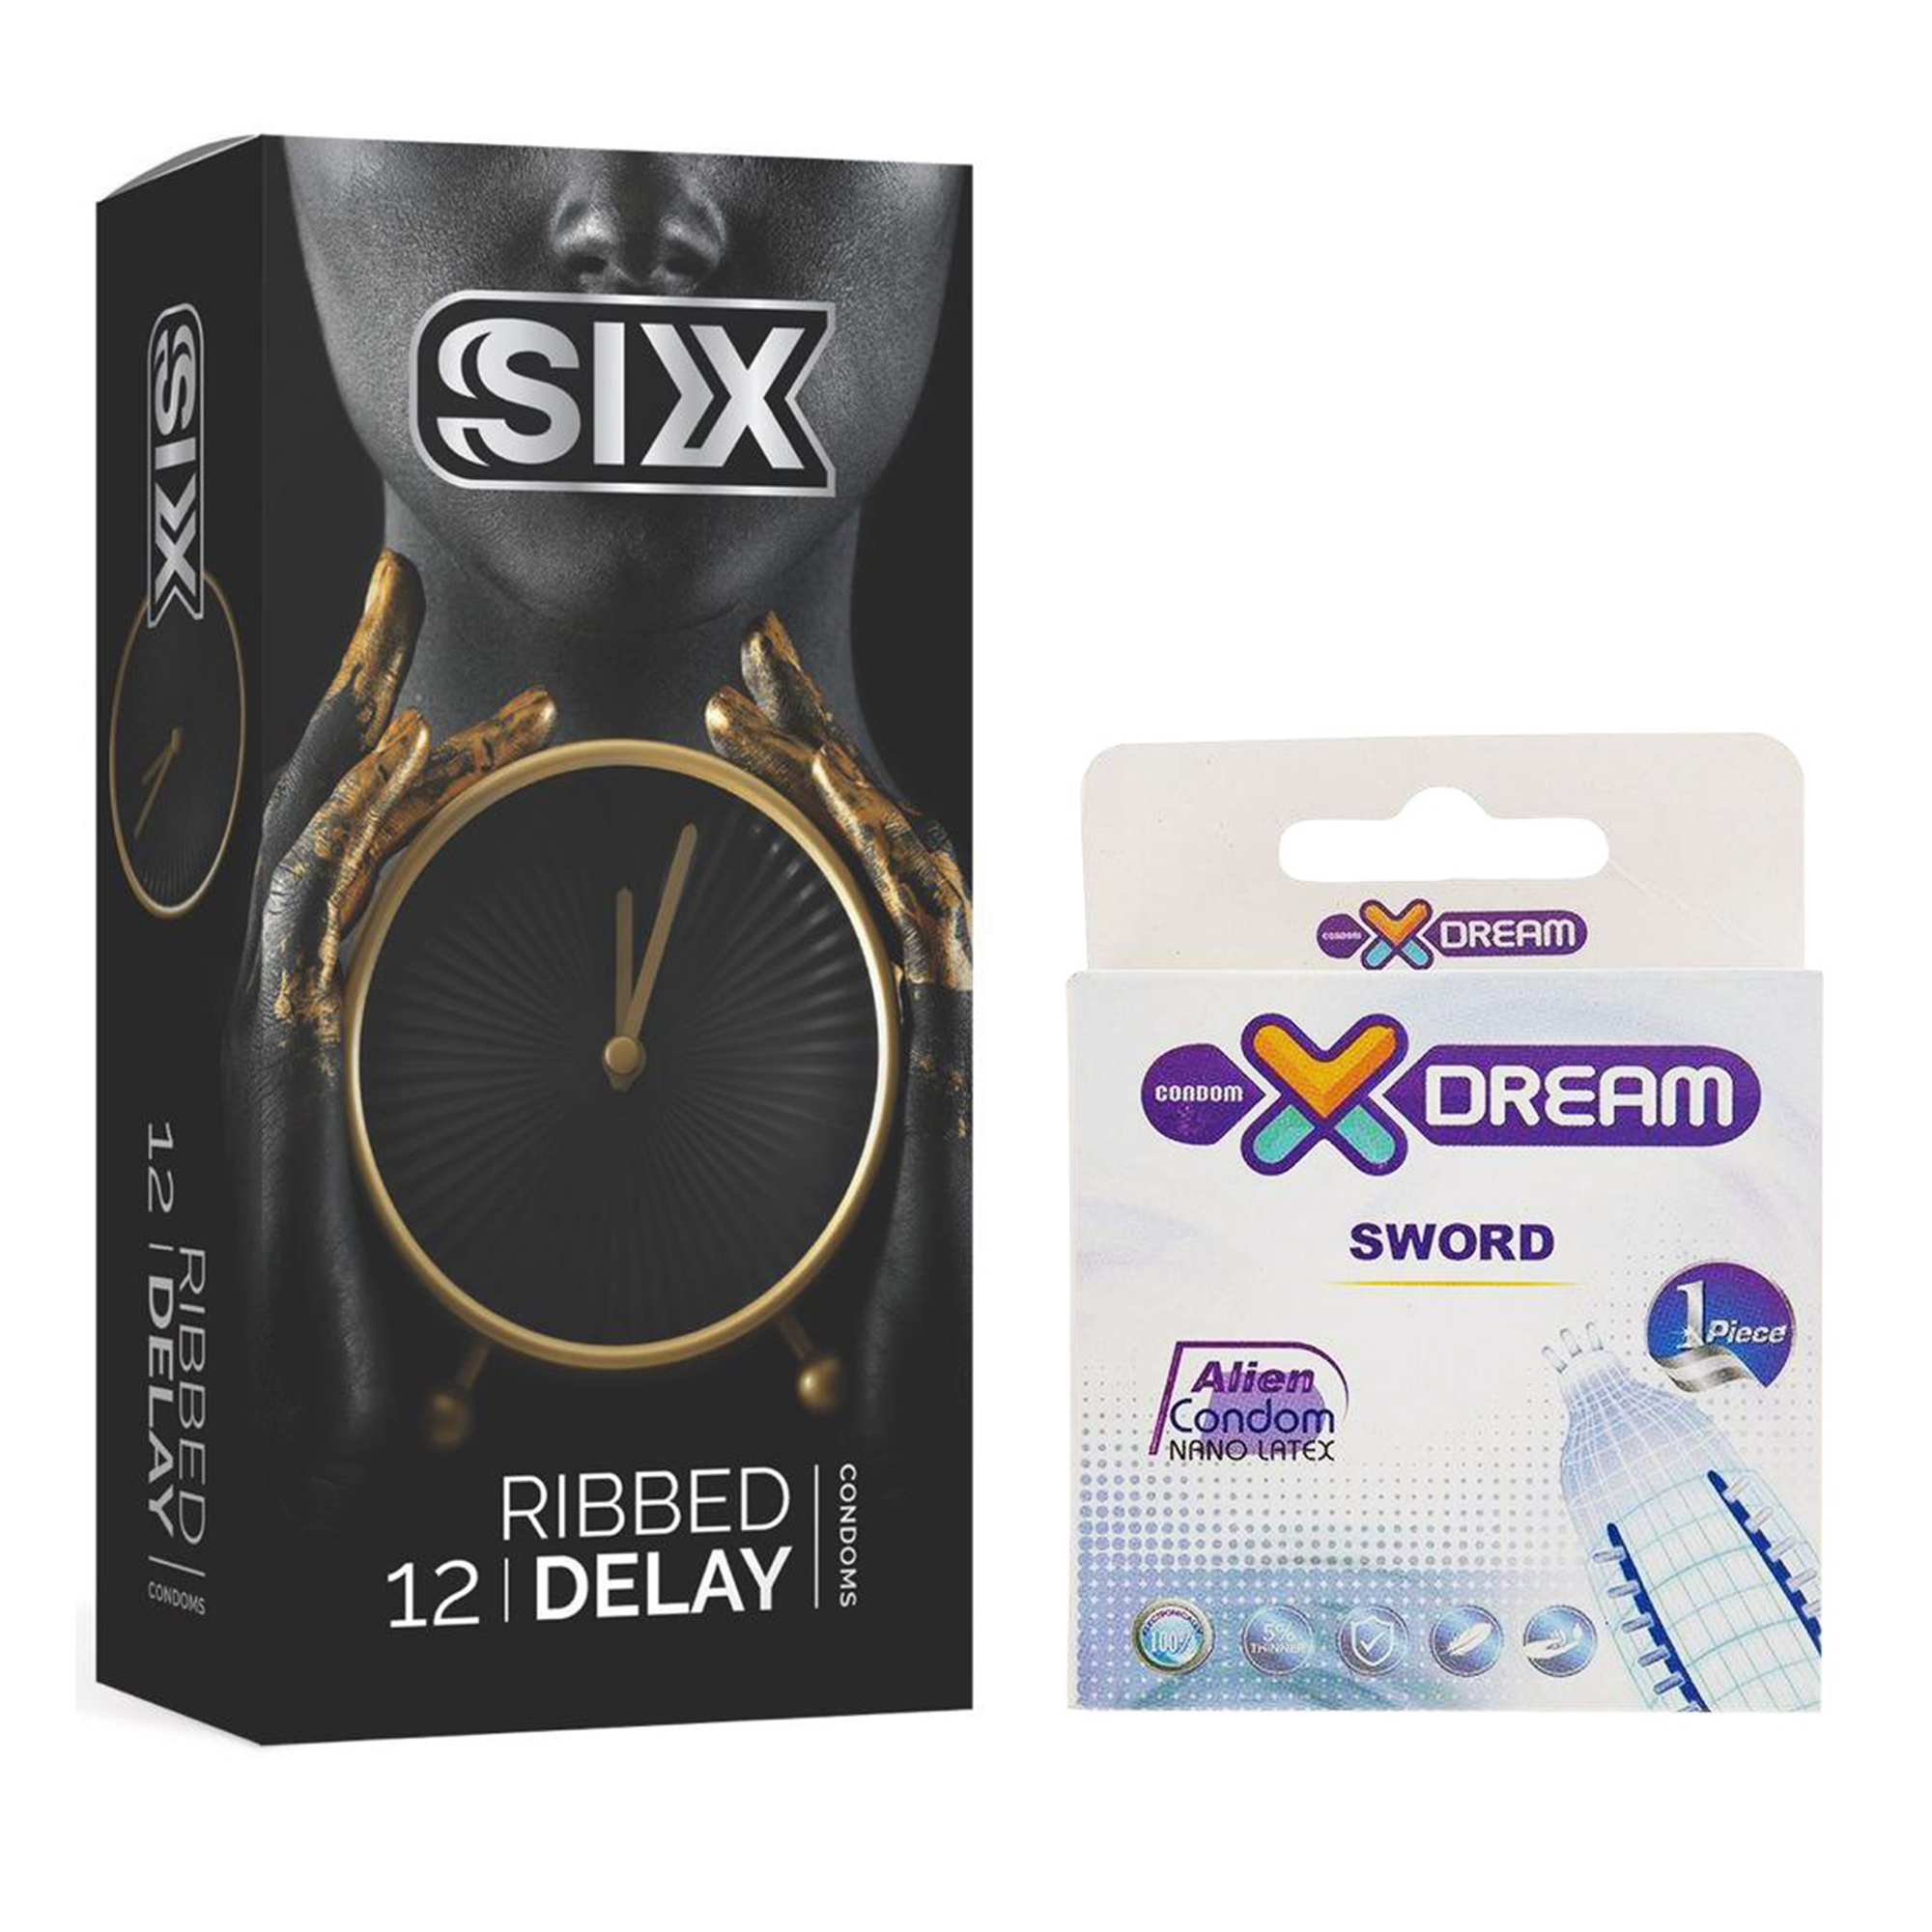 کاندوم سیکس مدل Ribbed Delay بسته 12 عددی به همراه کاندوم ایکس دریم مدل Sword